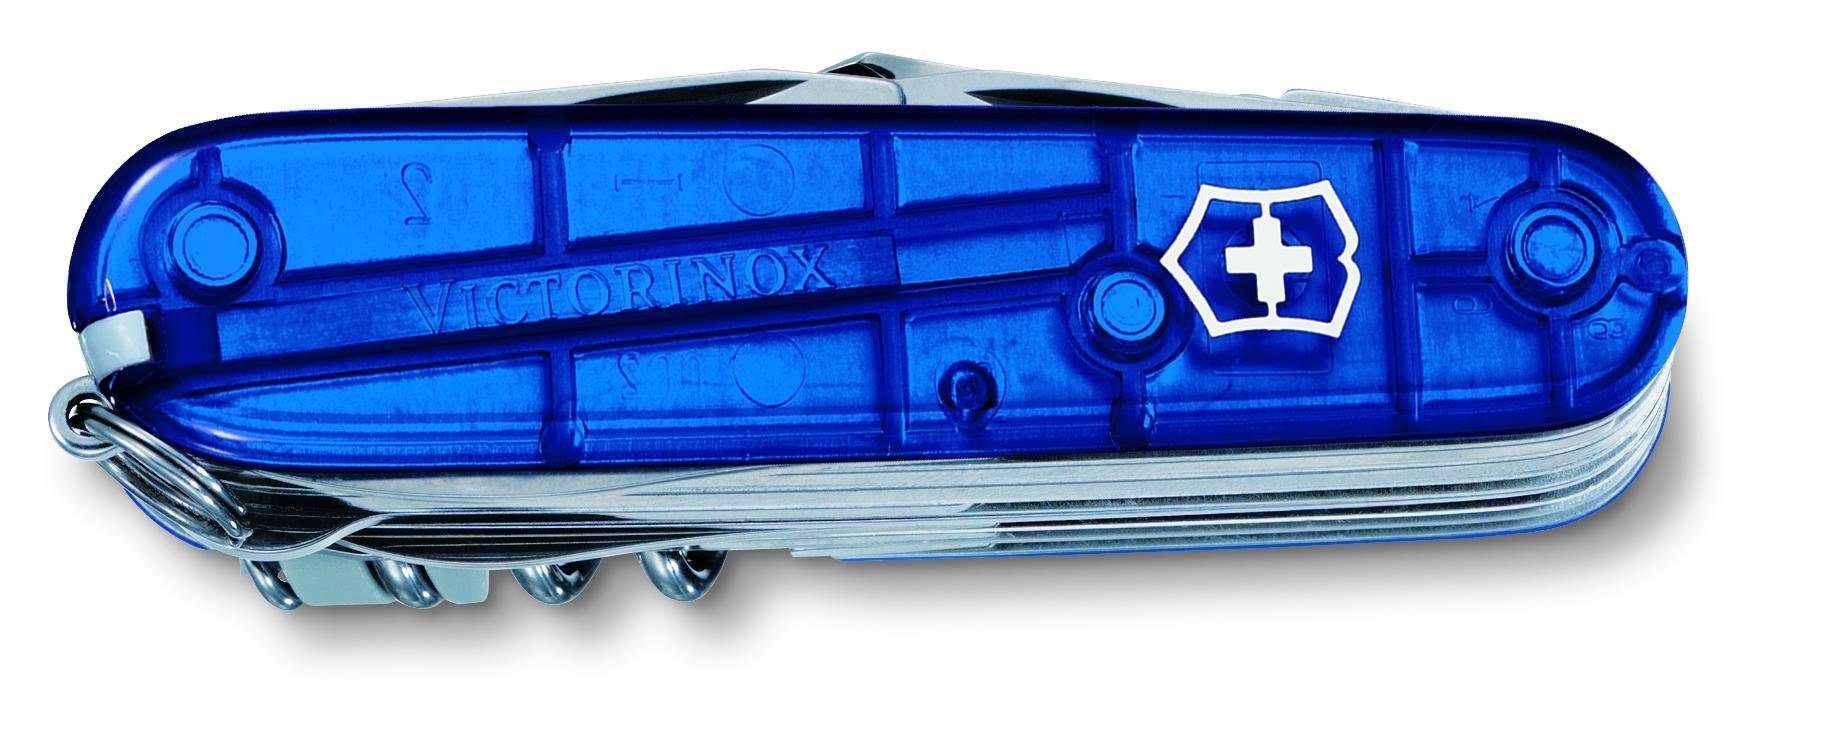 91 Swiss Taschenmesser blau Victorinox transparent mm, Champ,